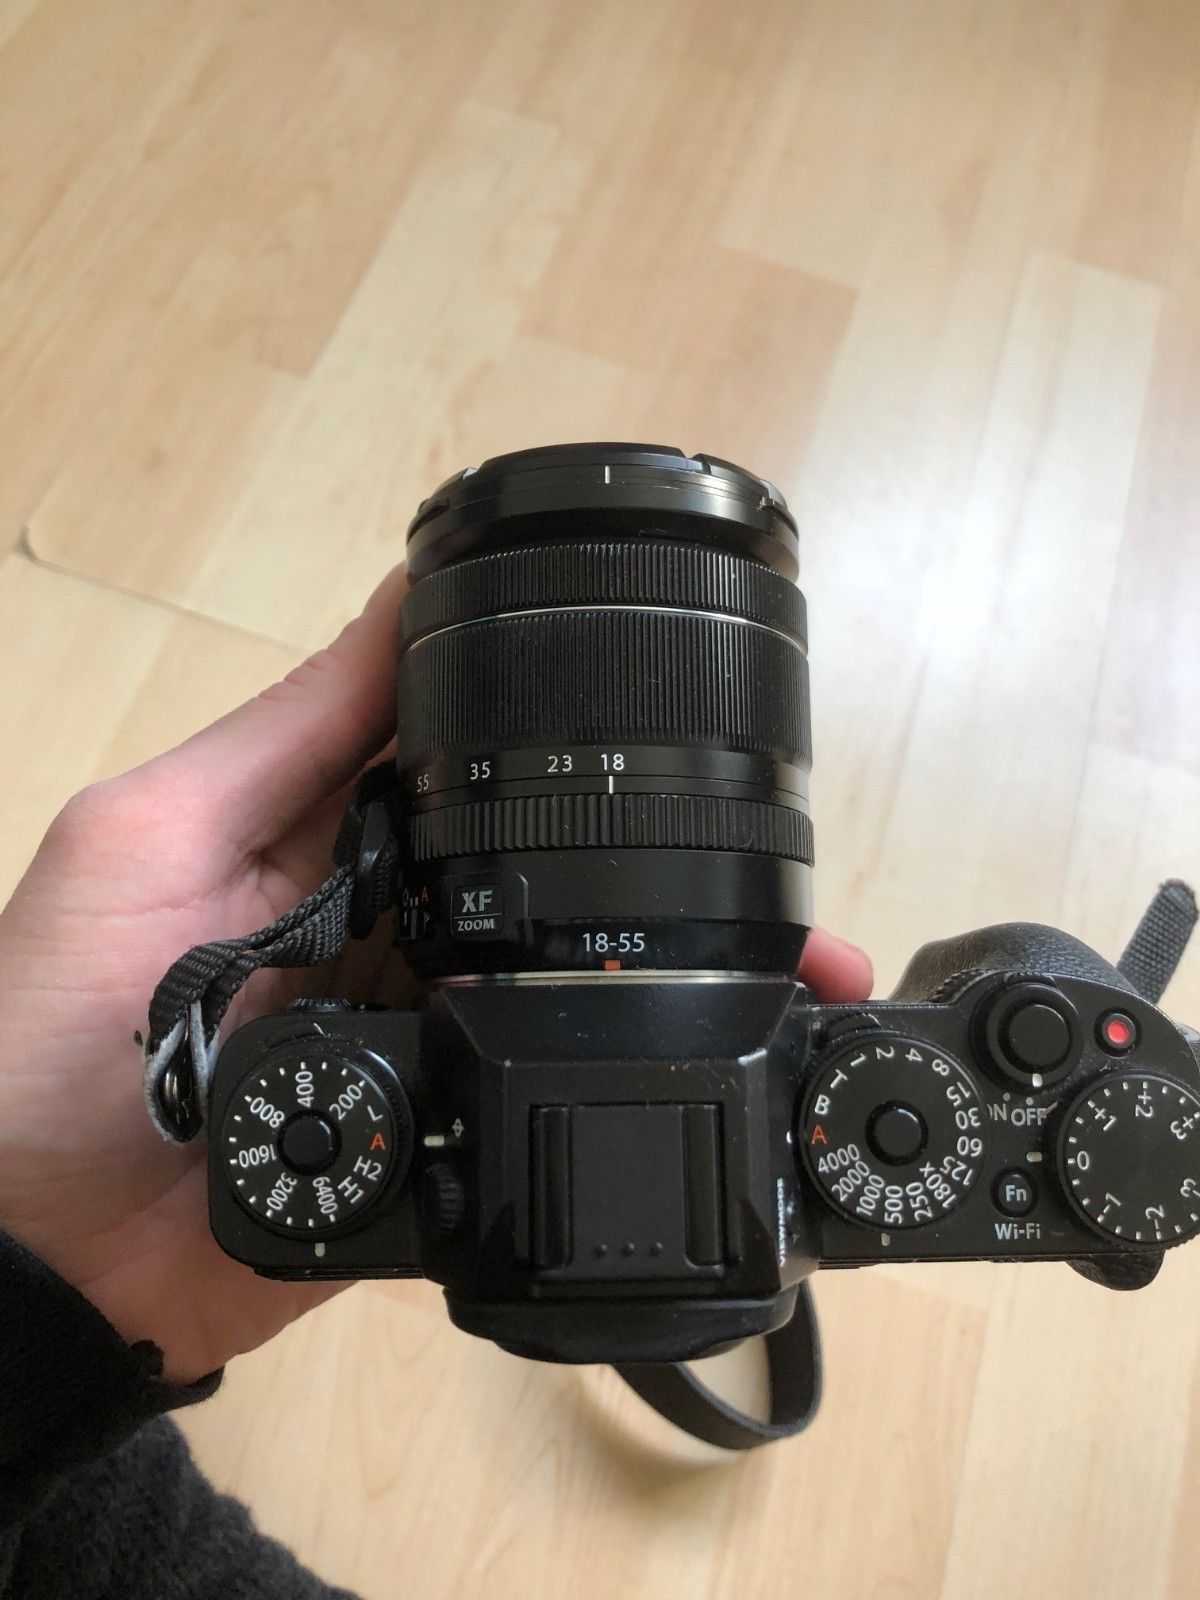 Fujifilm X-T1 Digitalkamera & Fujinon XF 18-55mm f2.8-4 - sehr guter Zustand